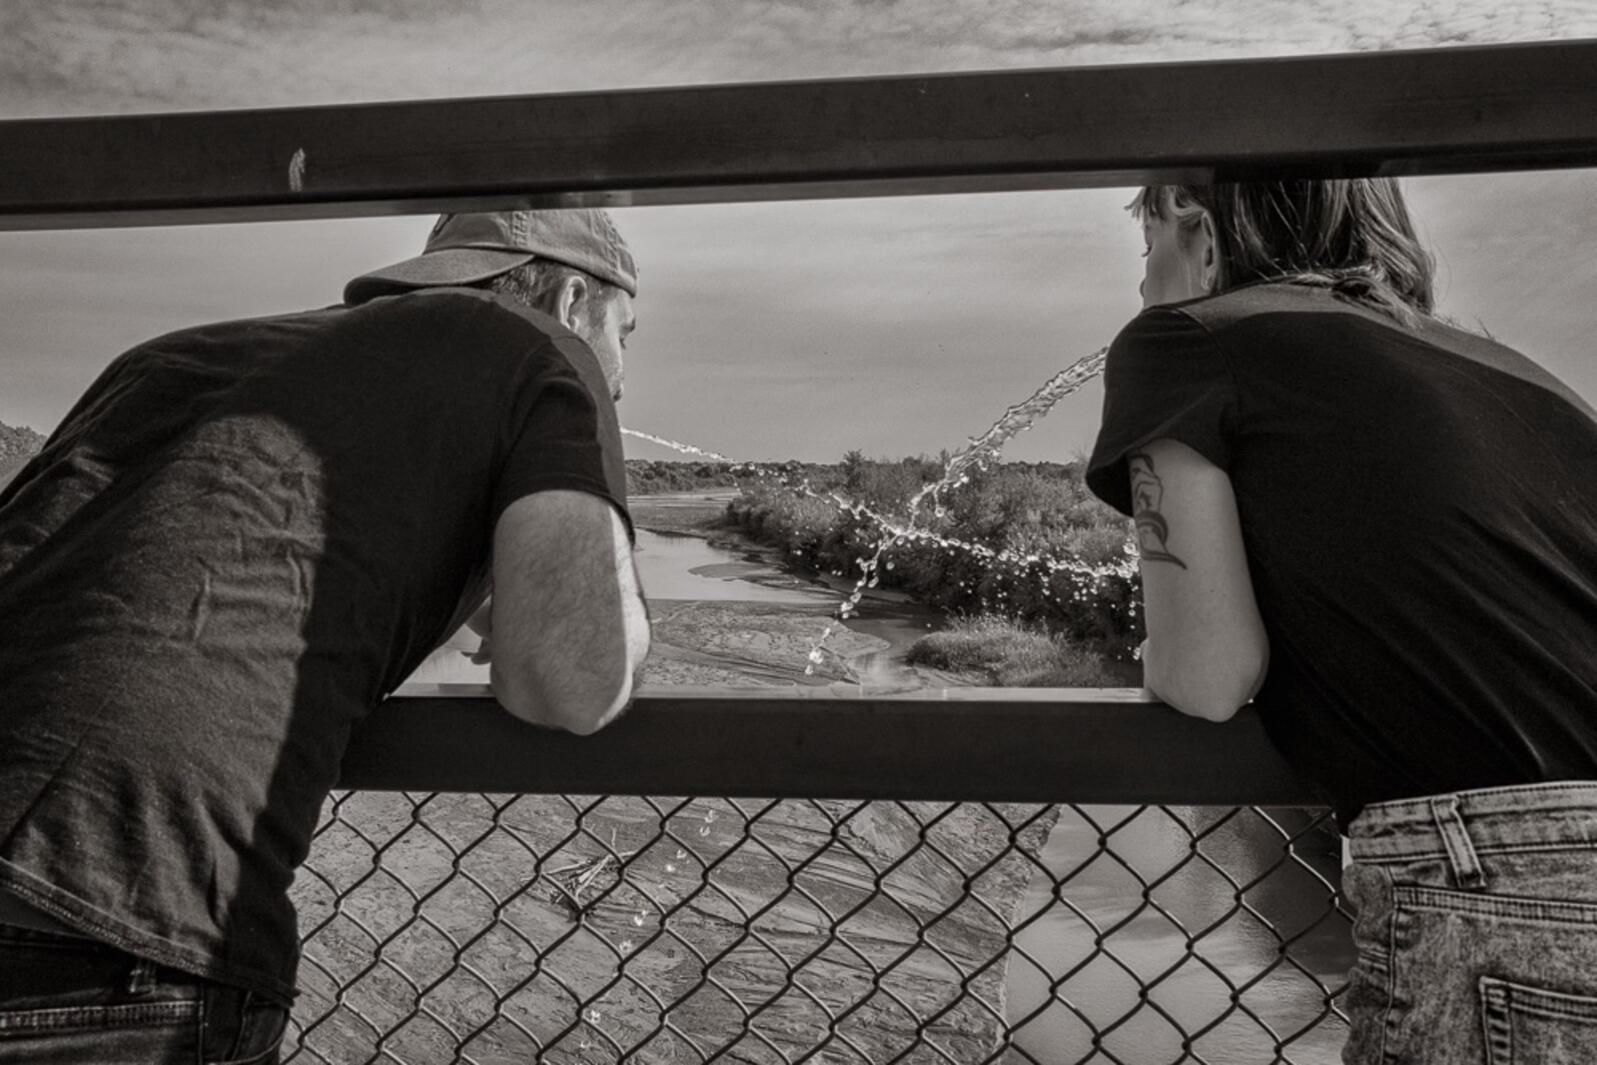 Joe and Amanda tithing back to the Rio Grande, Albuquerque, New Mexico, October 2022. Concept by Paula Castillo, photograph by Don Usner. 